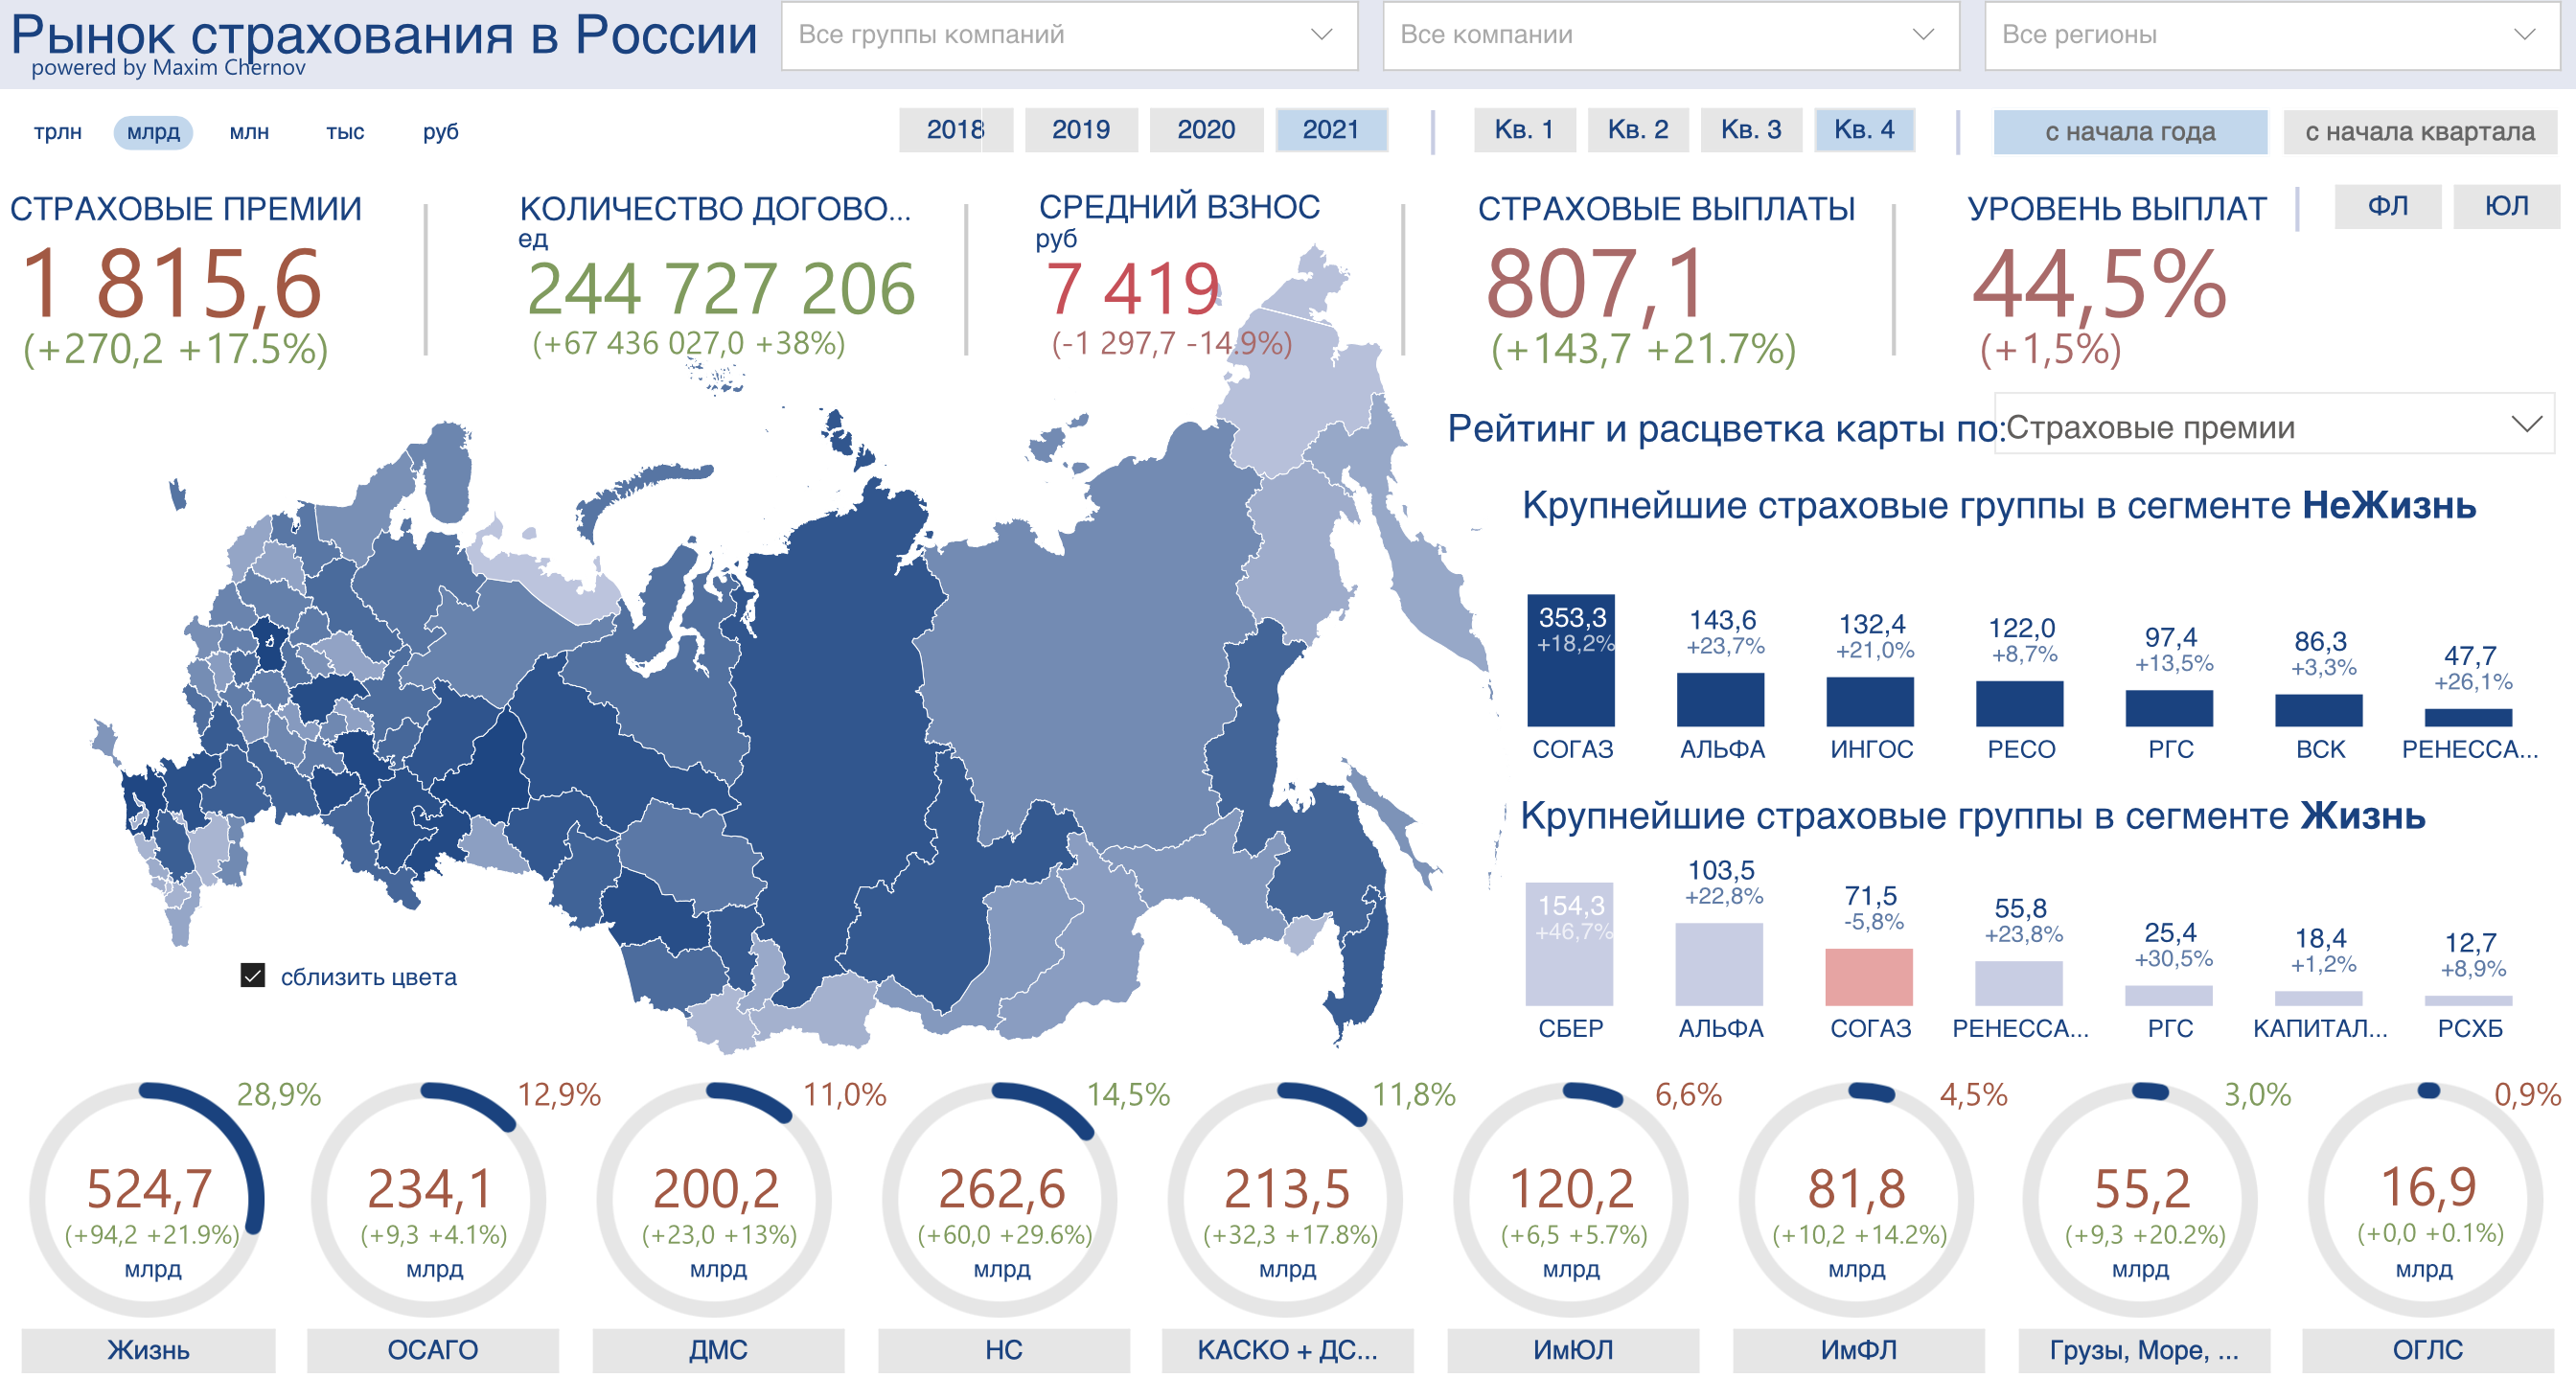 Рынок страхования в 2021 году превысил 1,8 трлн рублей